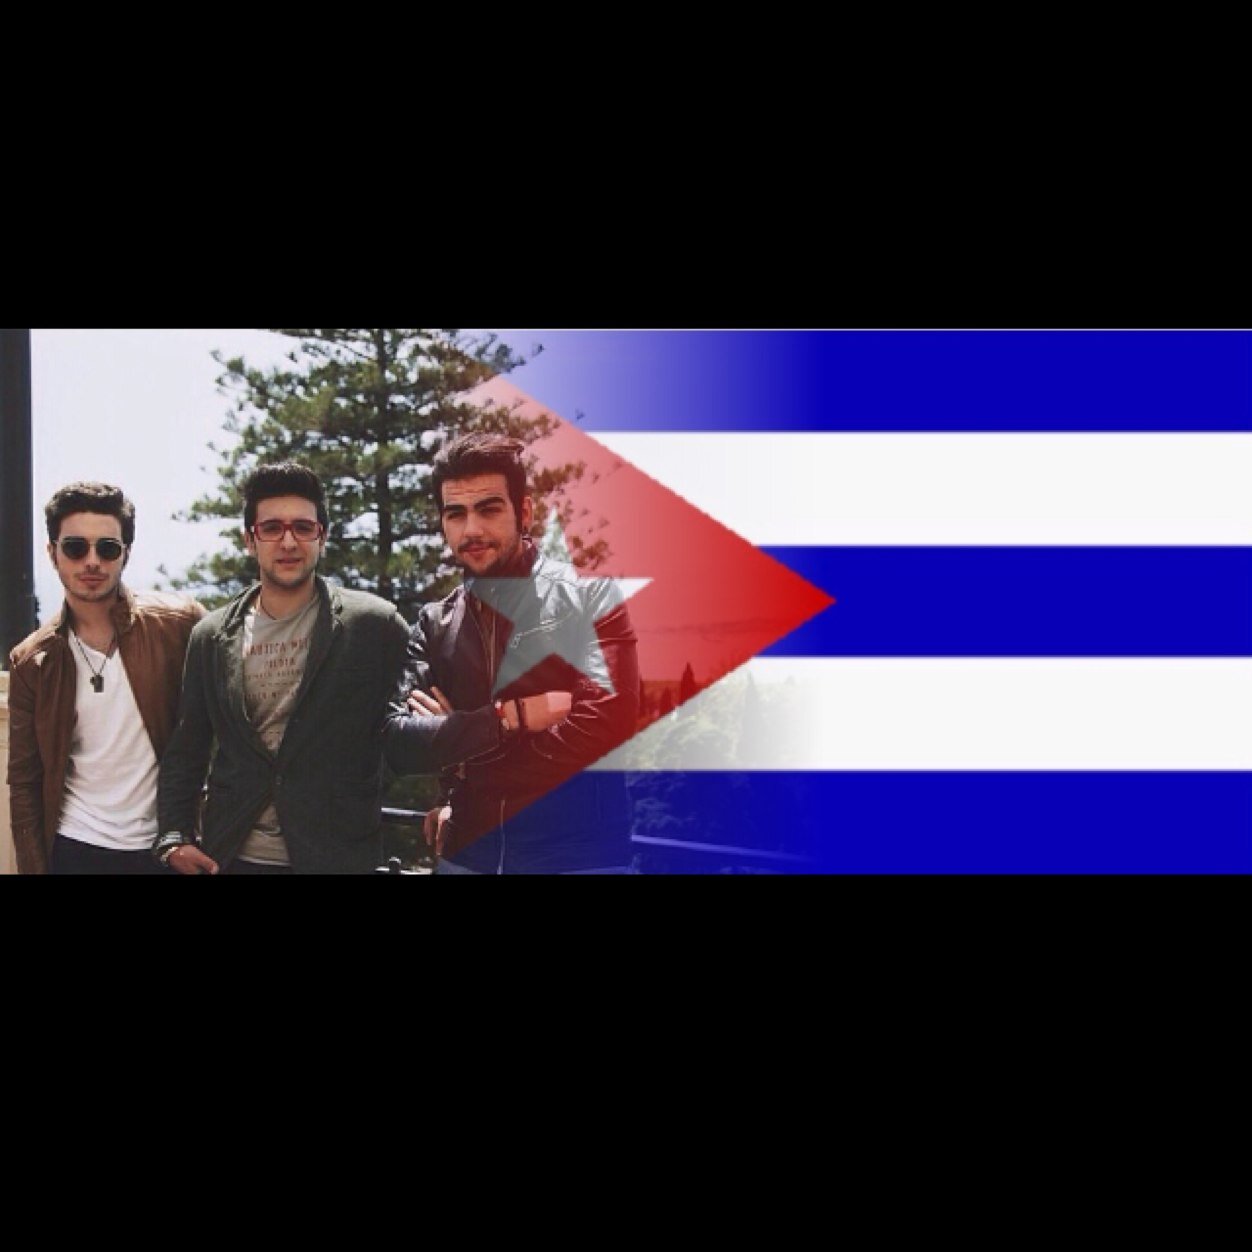 IL Volo grupo de jovenes italianos cantantes de tendencia Lirica !! Fan Club de la Habana !!